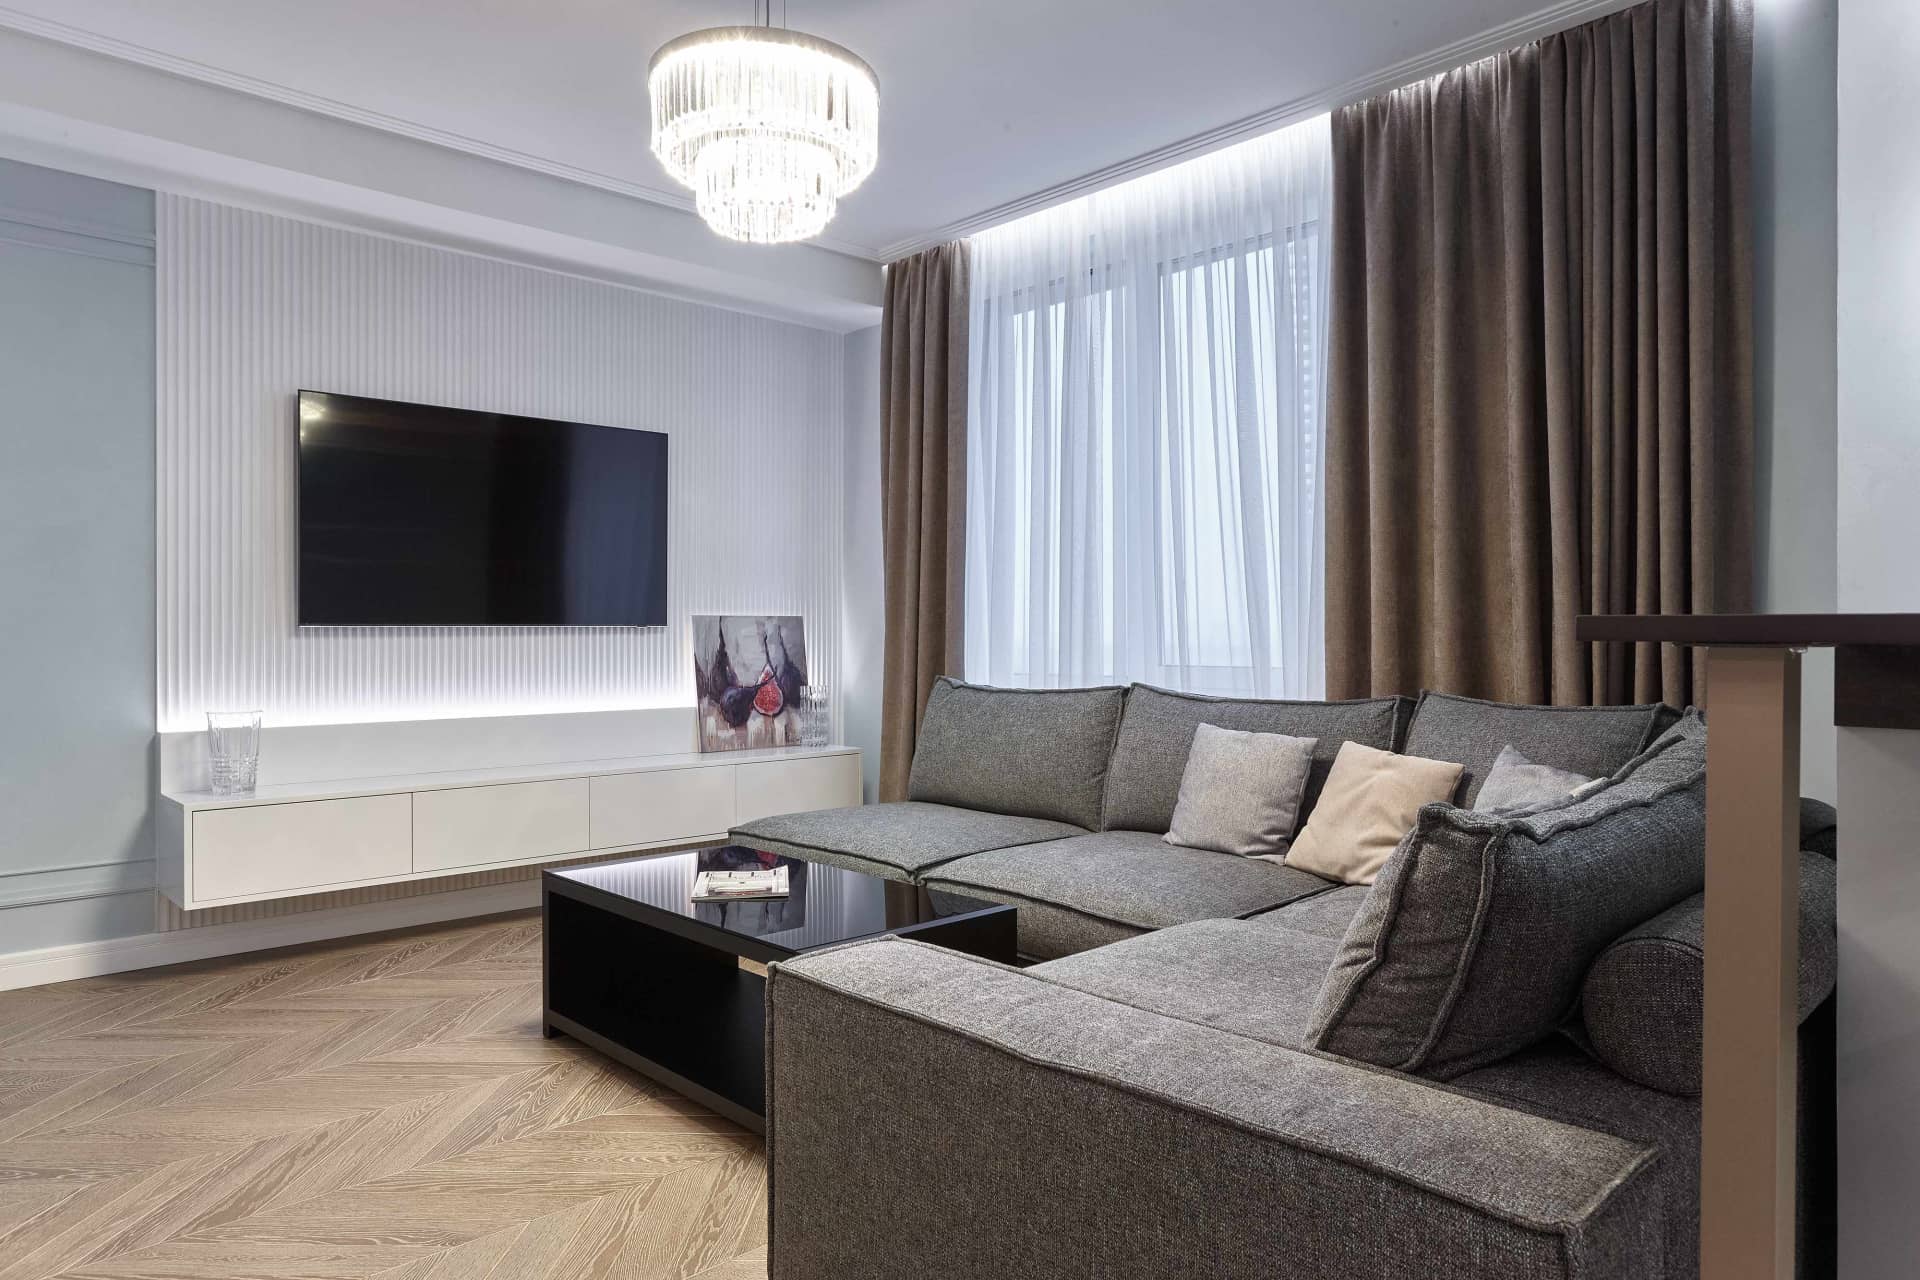 Оформление интерьера гостиной трехкомнатной квартиры в коричневый цвет в стиле современной классики. Фото № 68319.